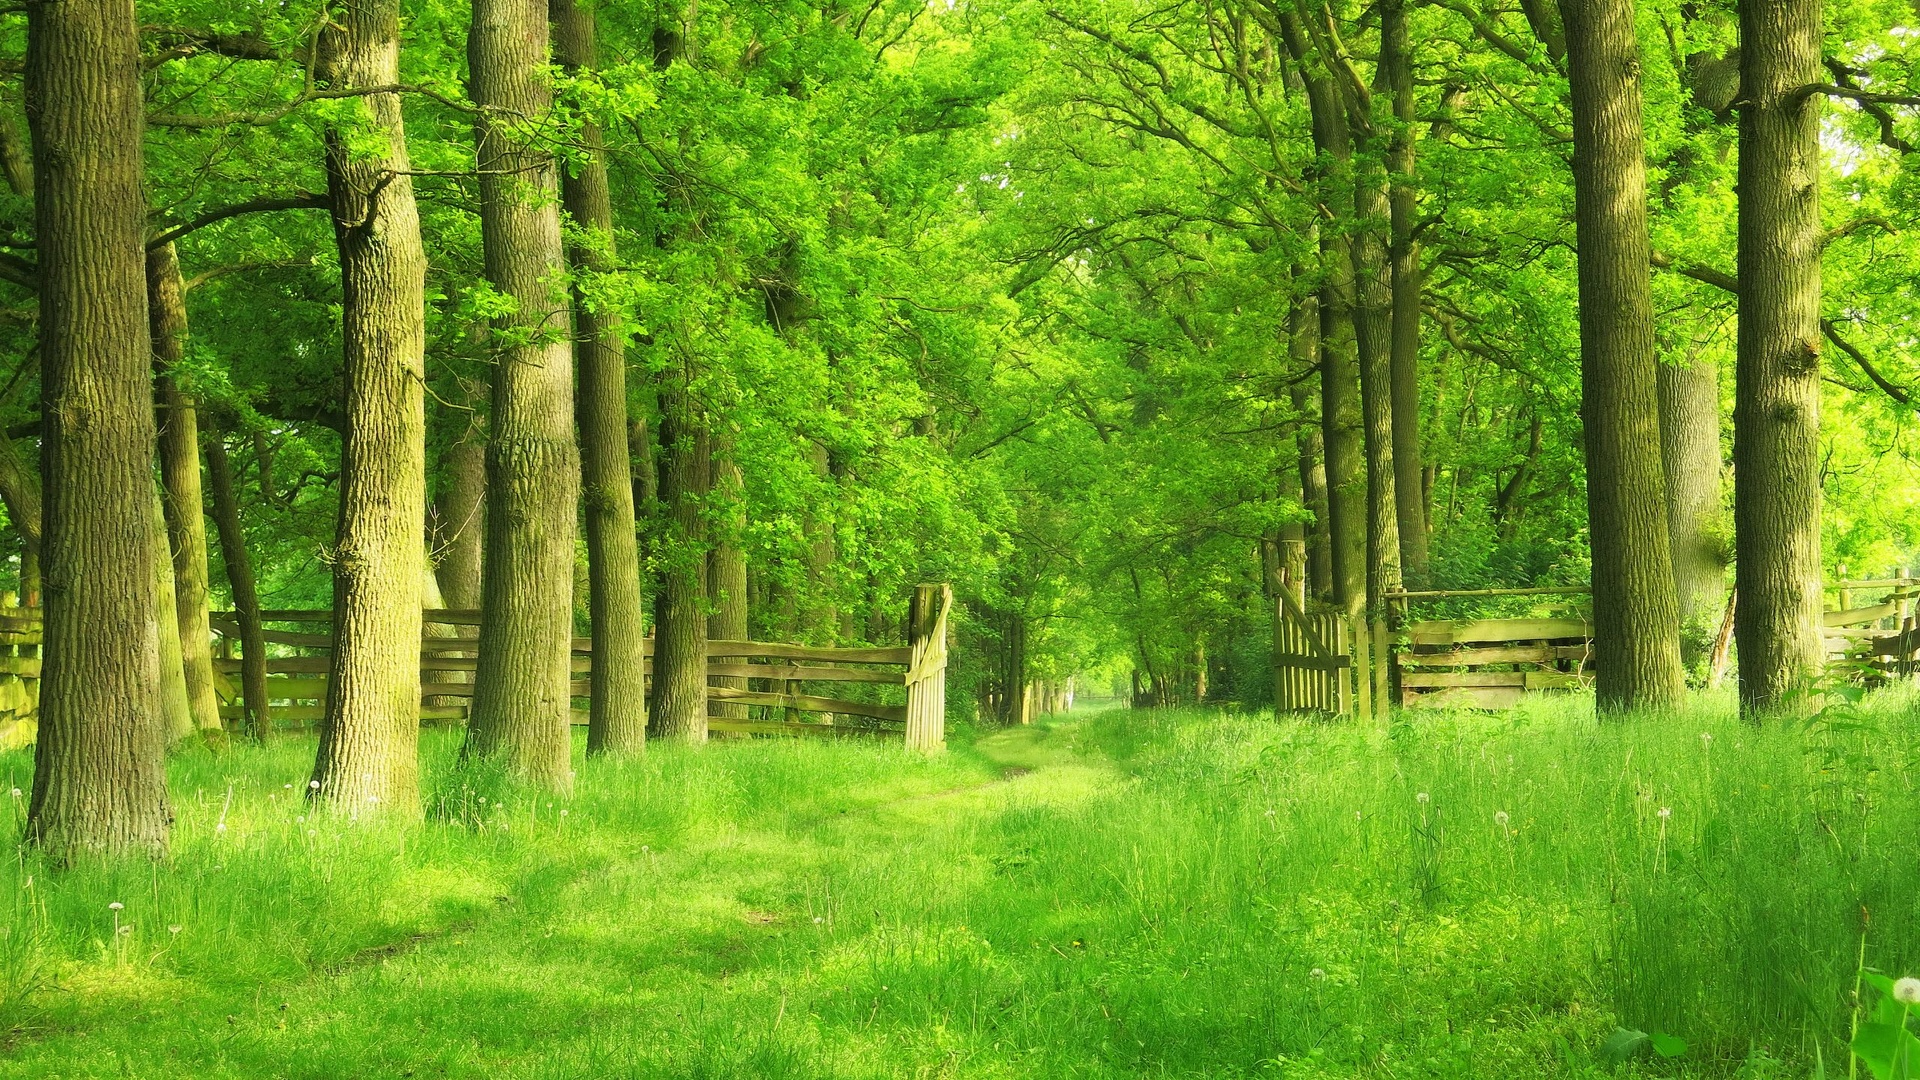 Chemin dans les bois.jpg